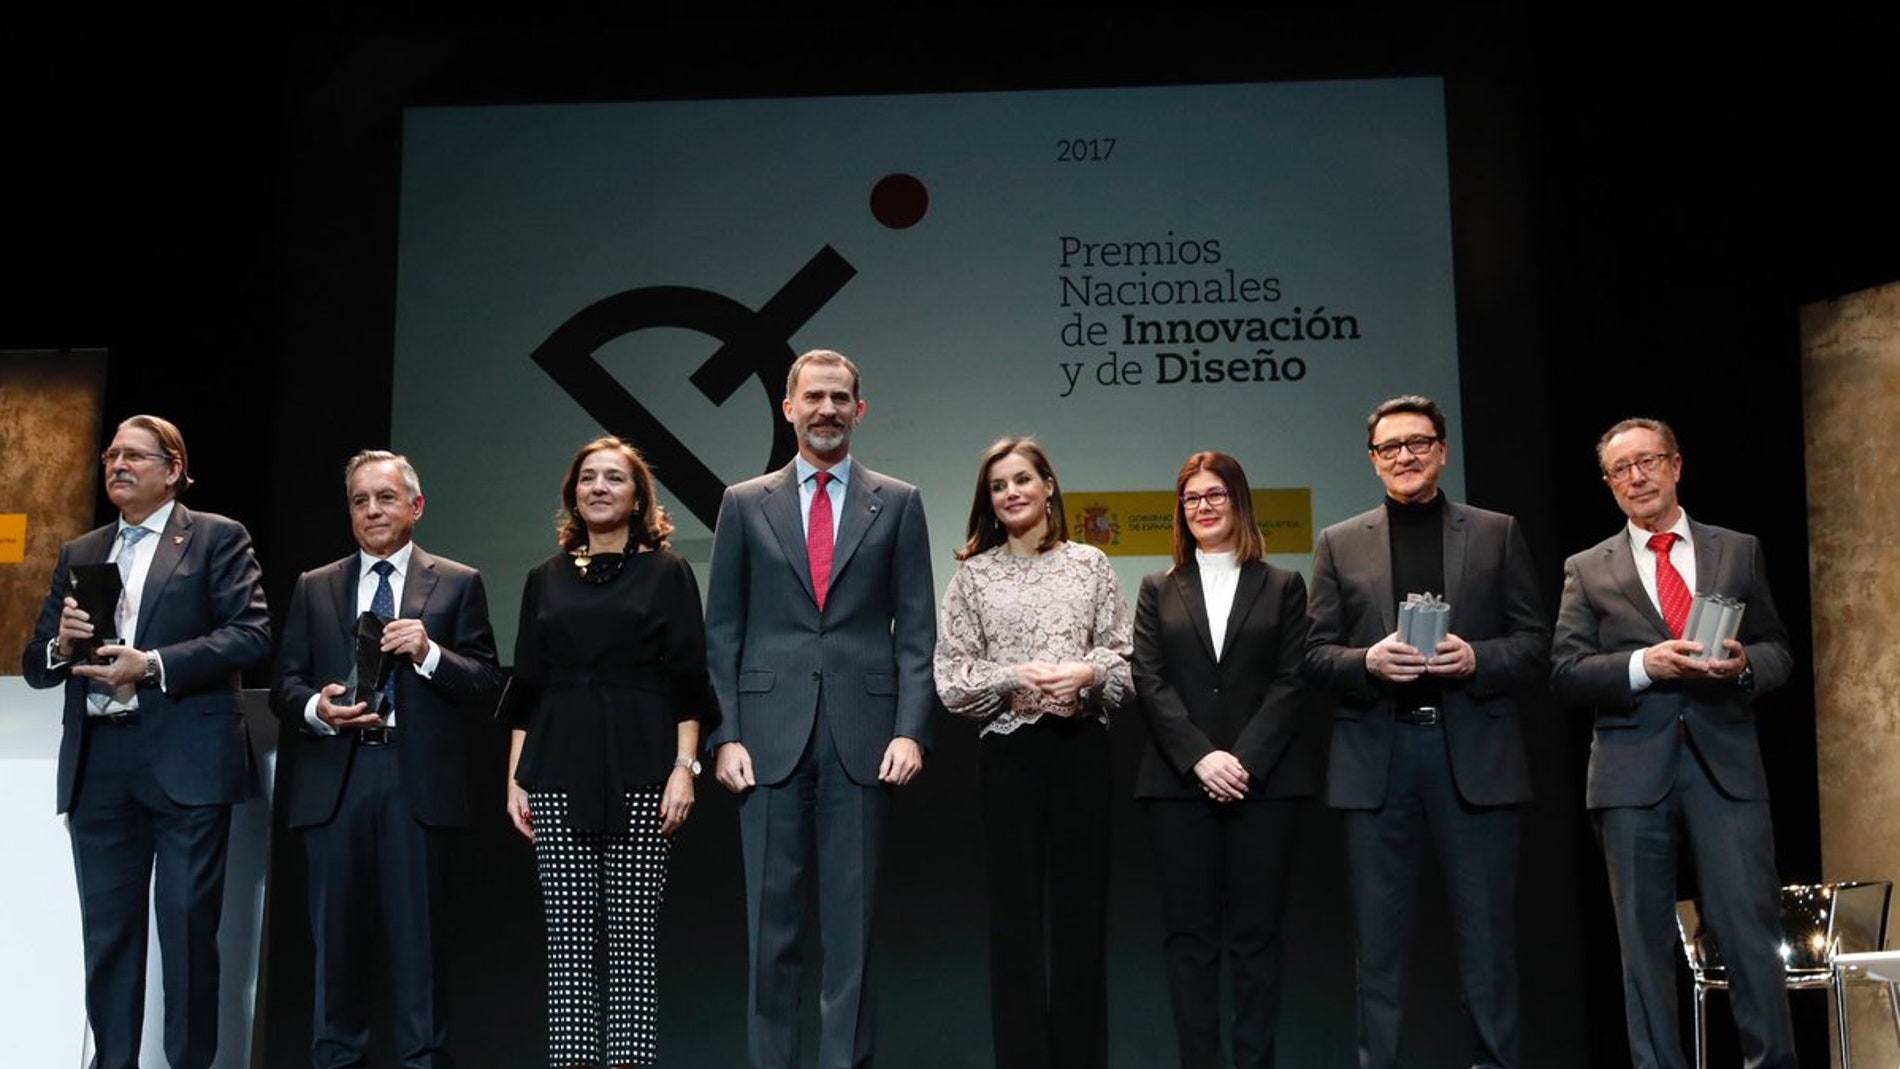 Antonio Munoz Beraza y la SEDECAL premios nacionales de Innovacion